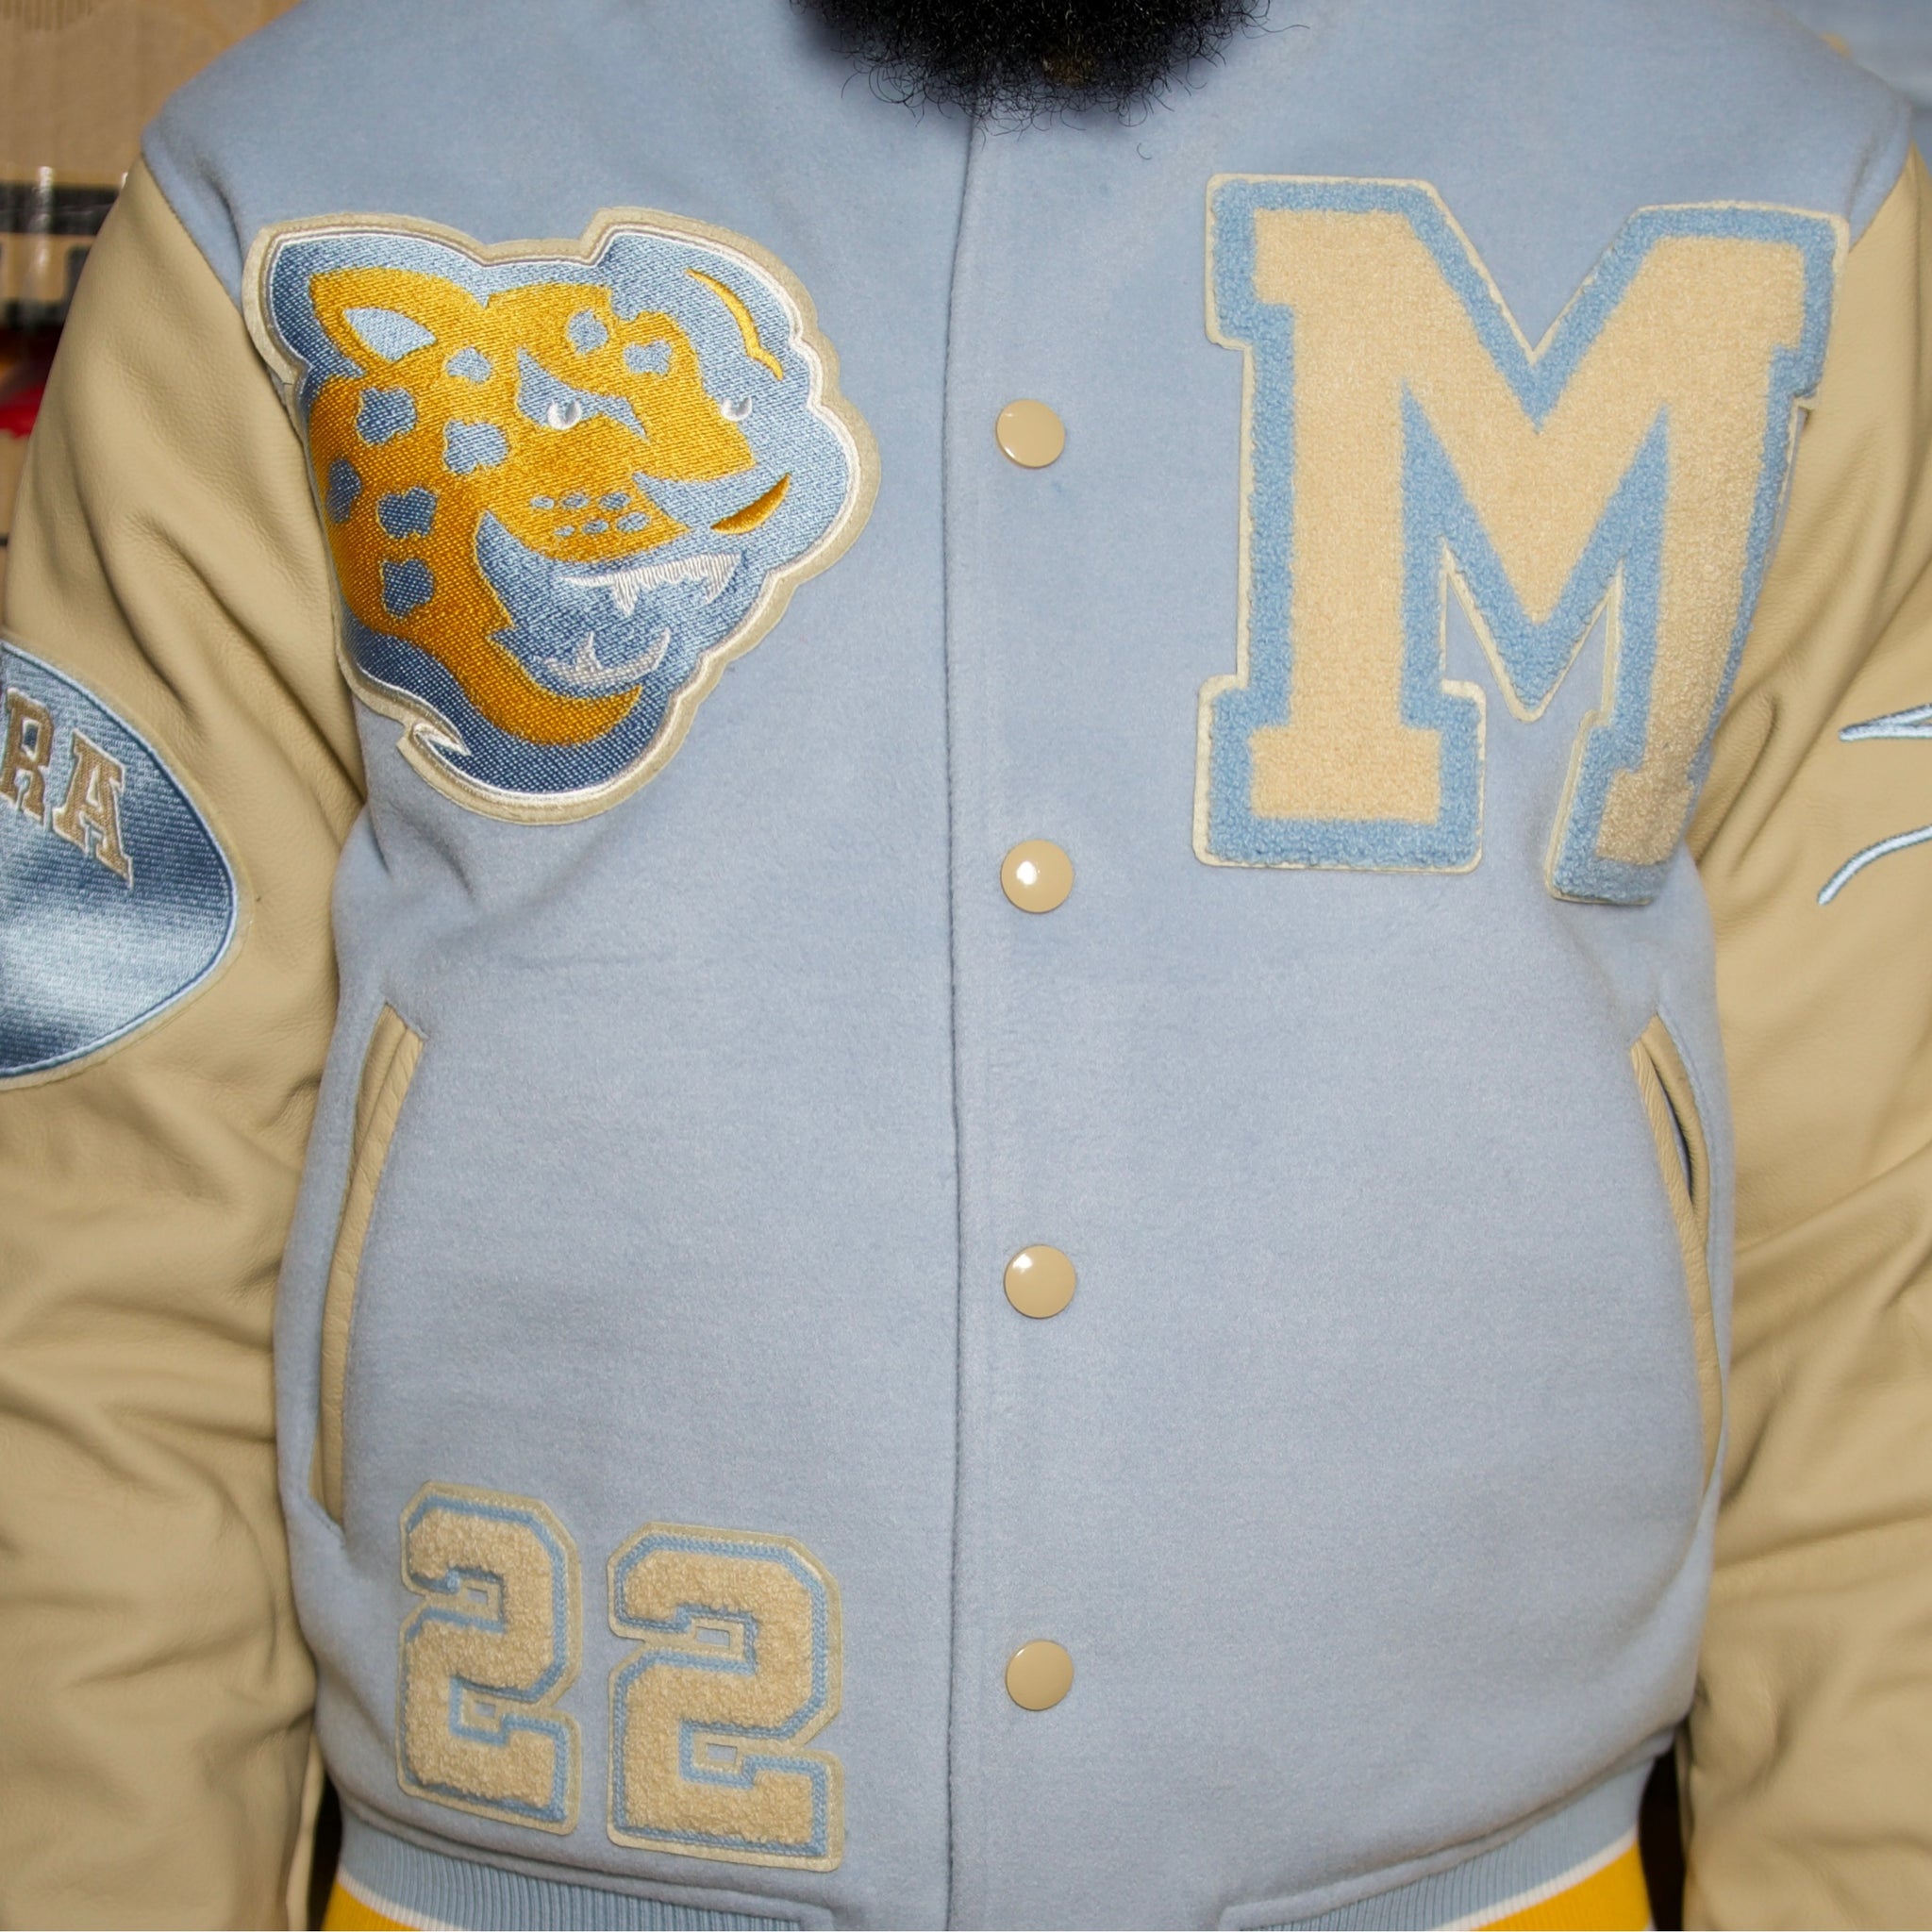 Southern University Blue Varsity Jacket